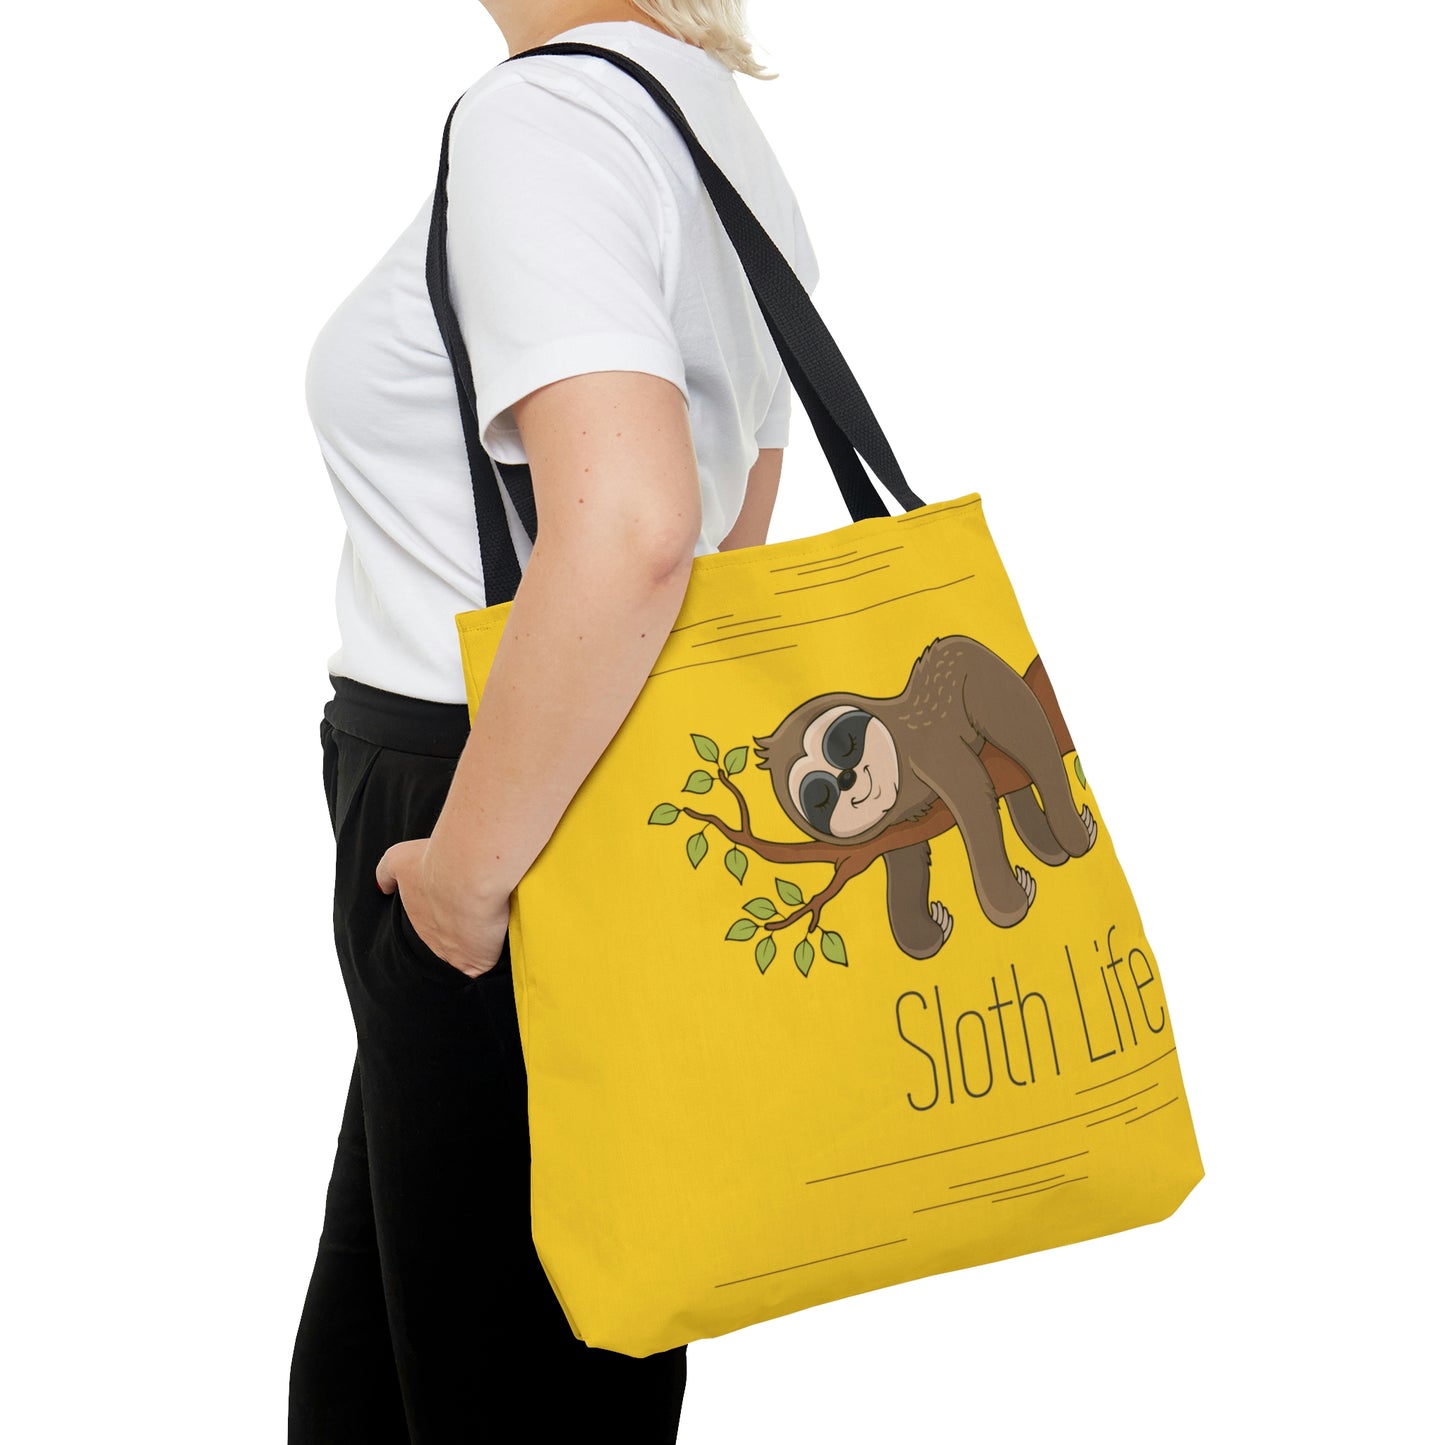 Sloth Life Tote Bag